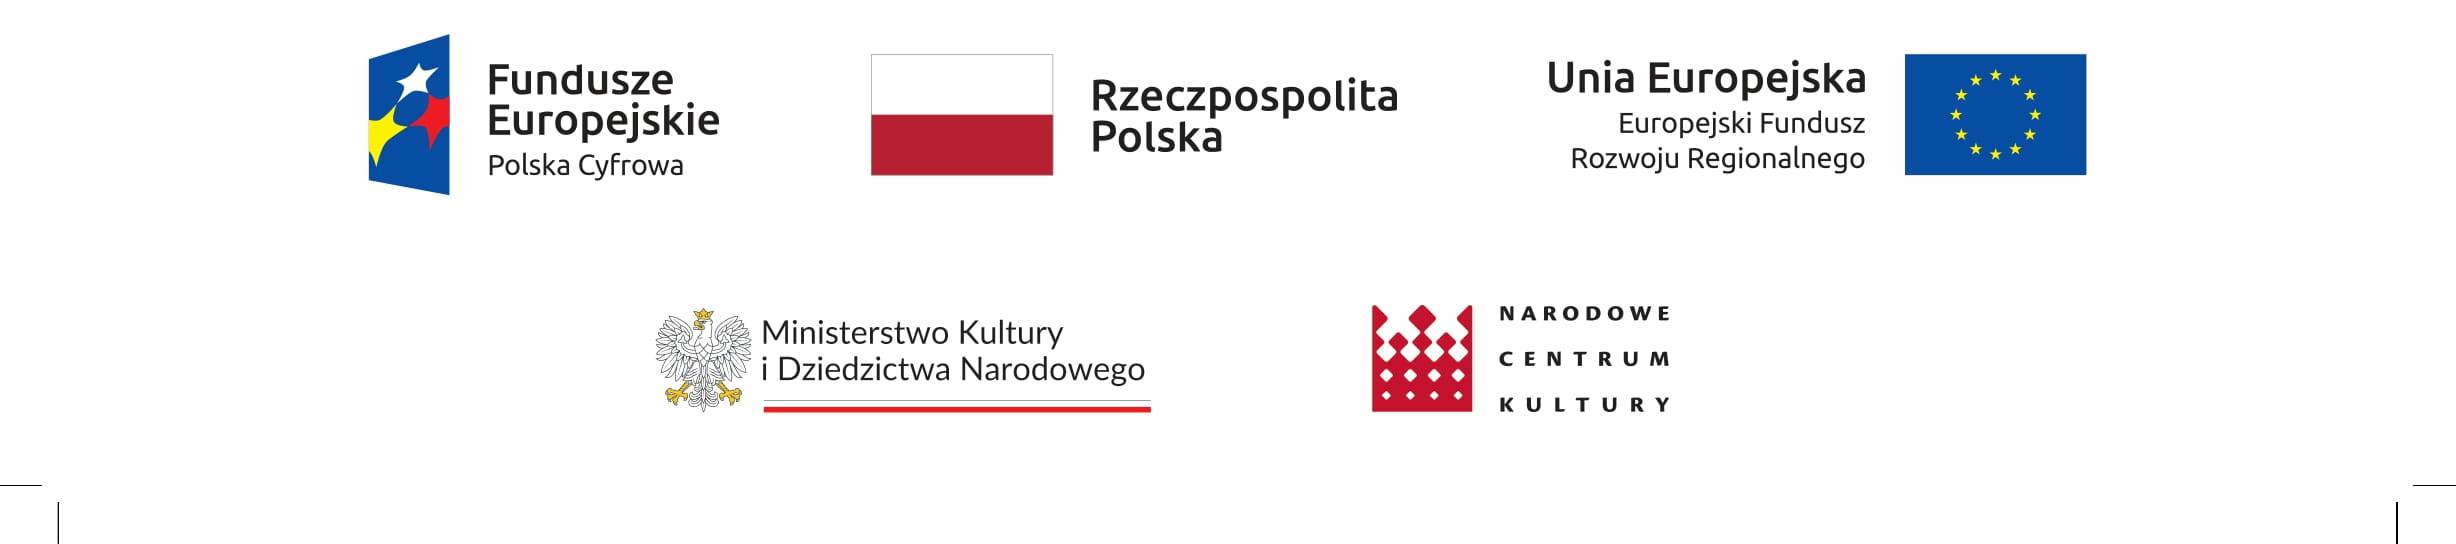 Logotypy po zmianie konwersja cyfrowa